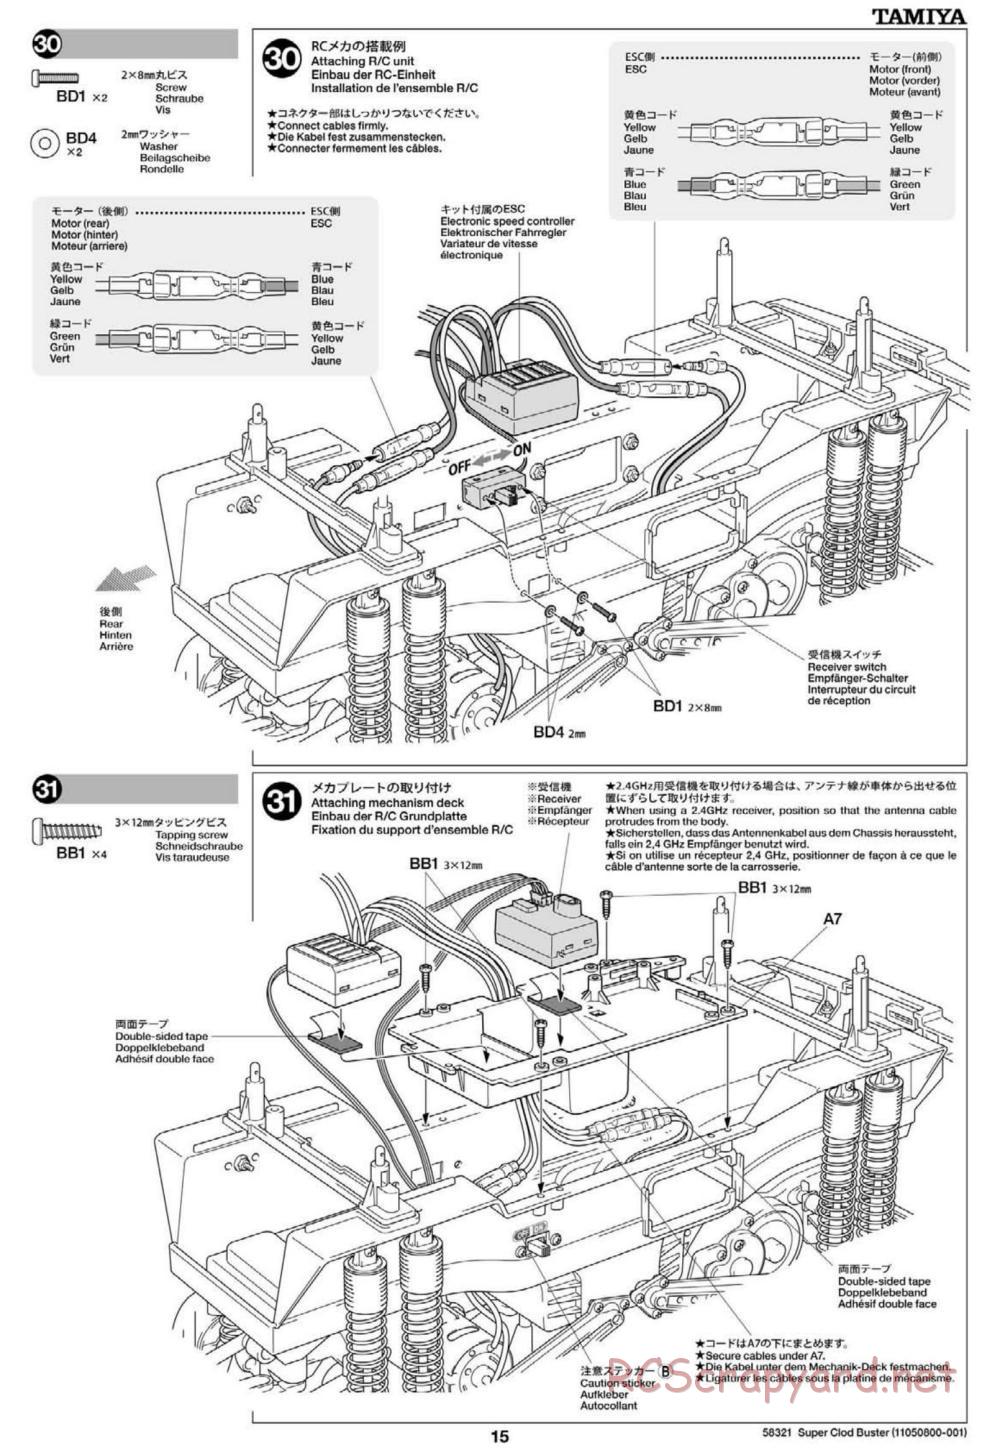 Tamiya - Super Clod Buster Chassis - Manual - Page 15